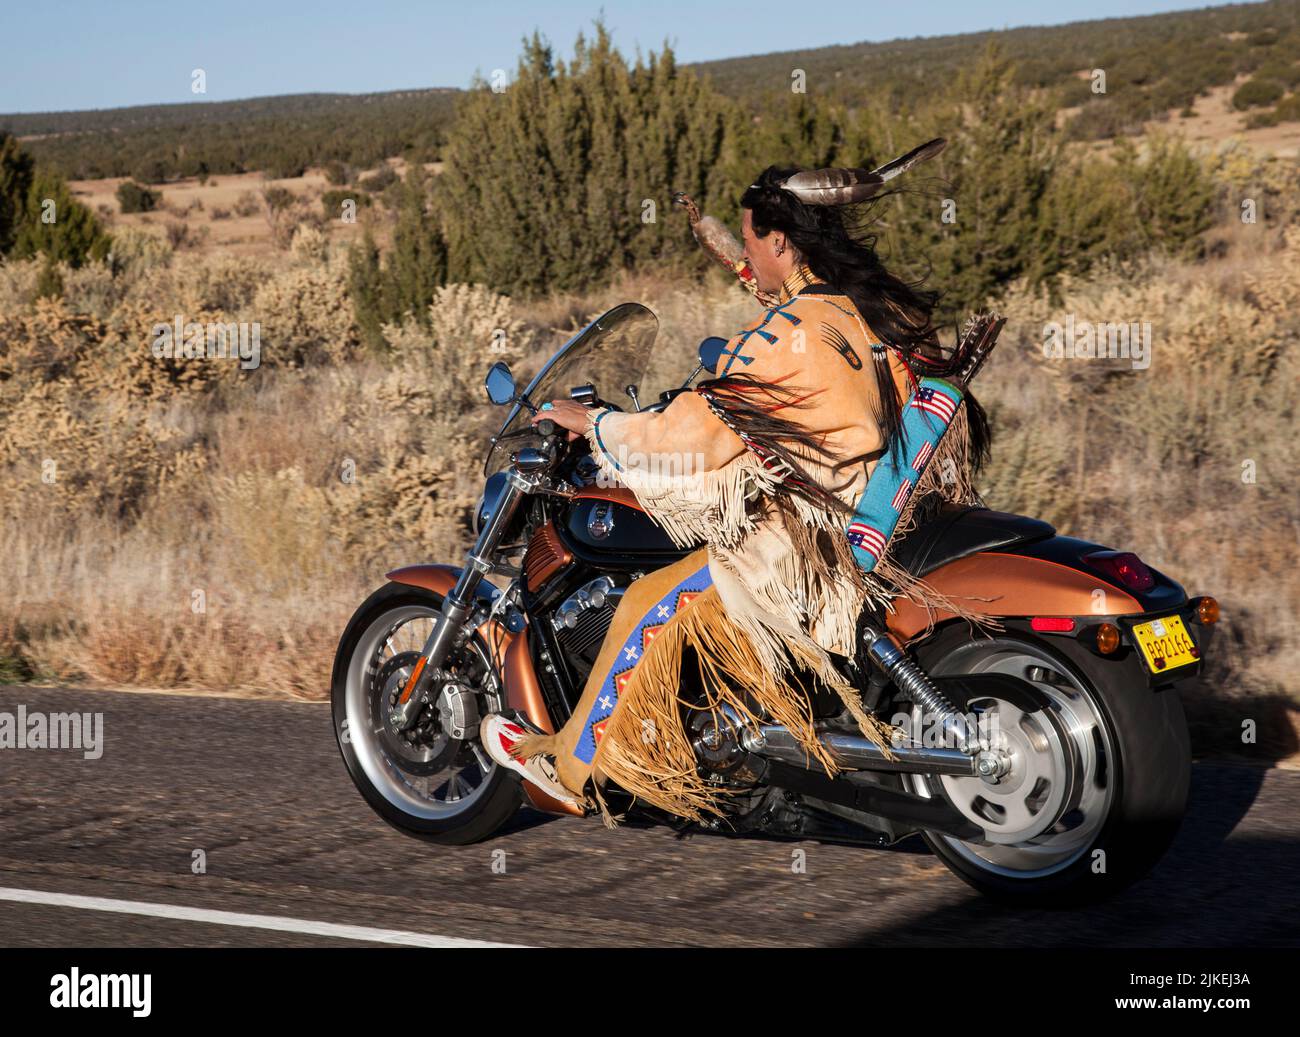 Traditionell gekleideter Indianermann (Arapahoe) fährt Harley Davidson Motorrad auf dem Country Highway Stockfoto